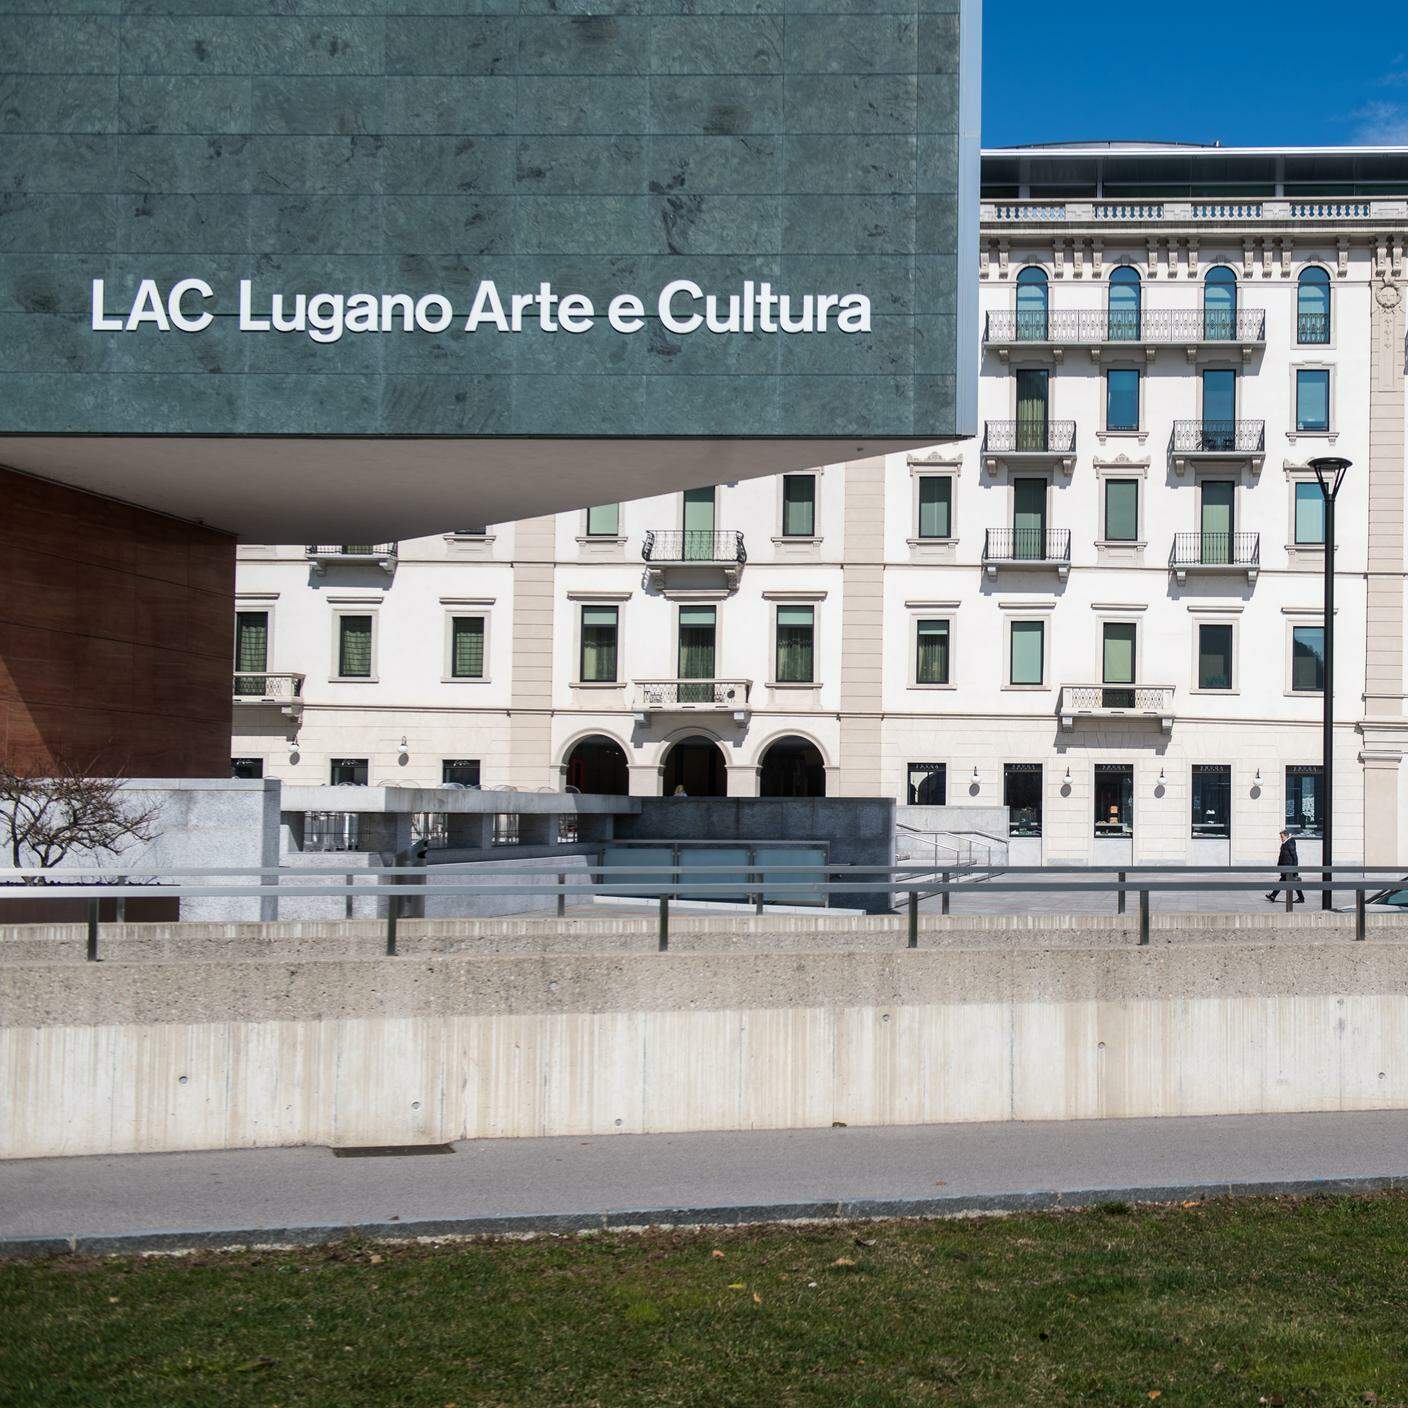 LAC, Lugano Arte e Cultura